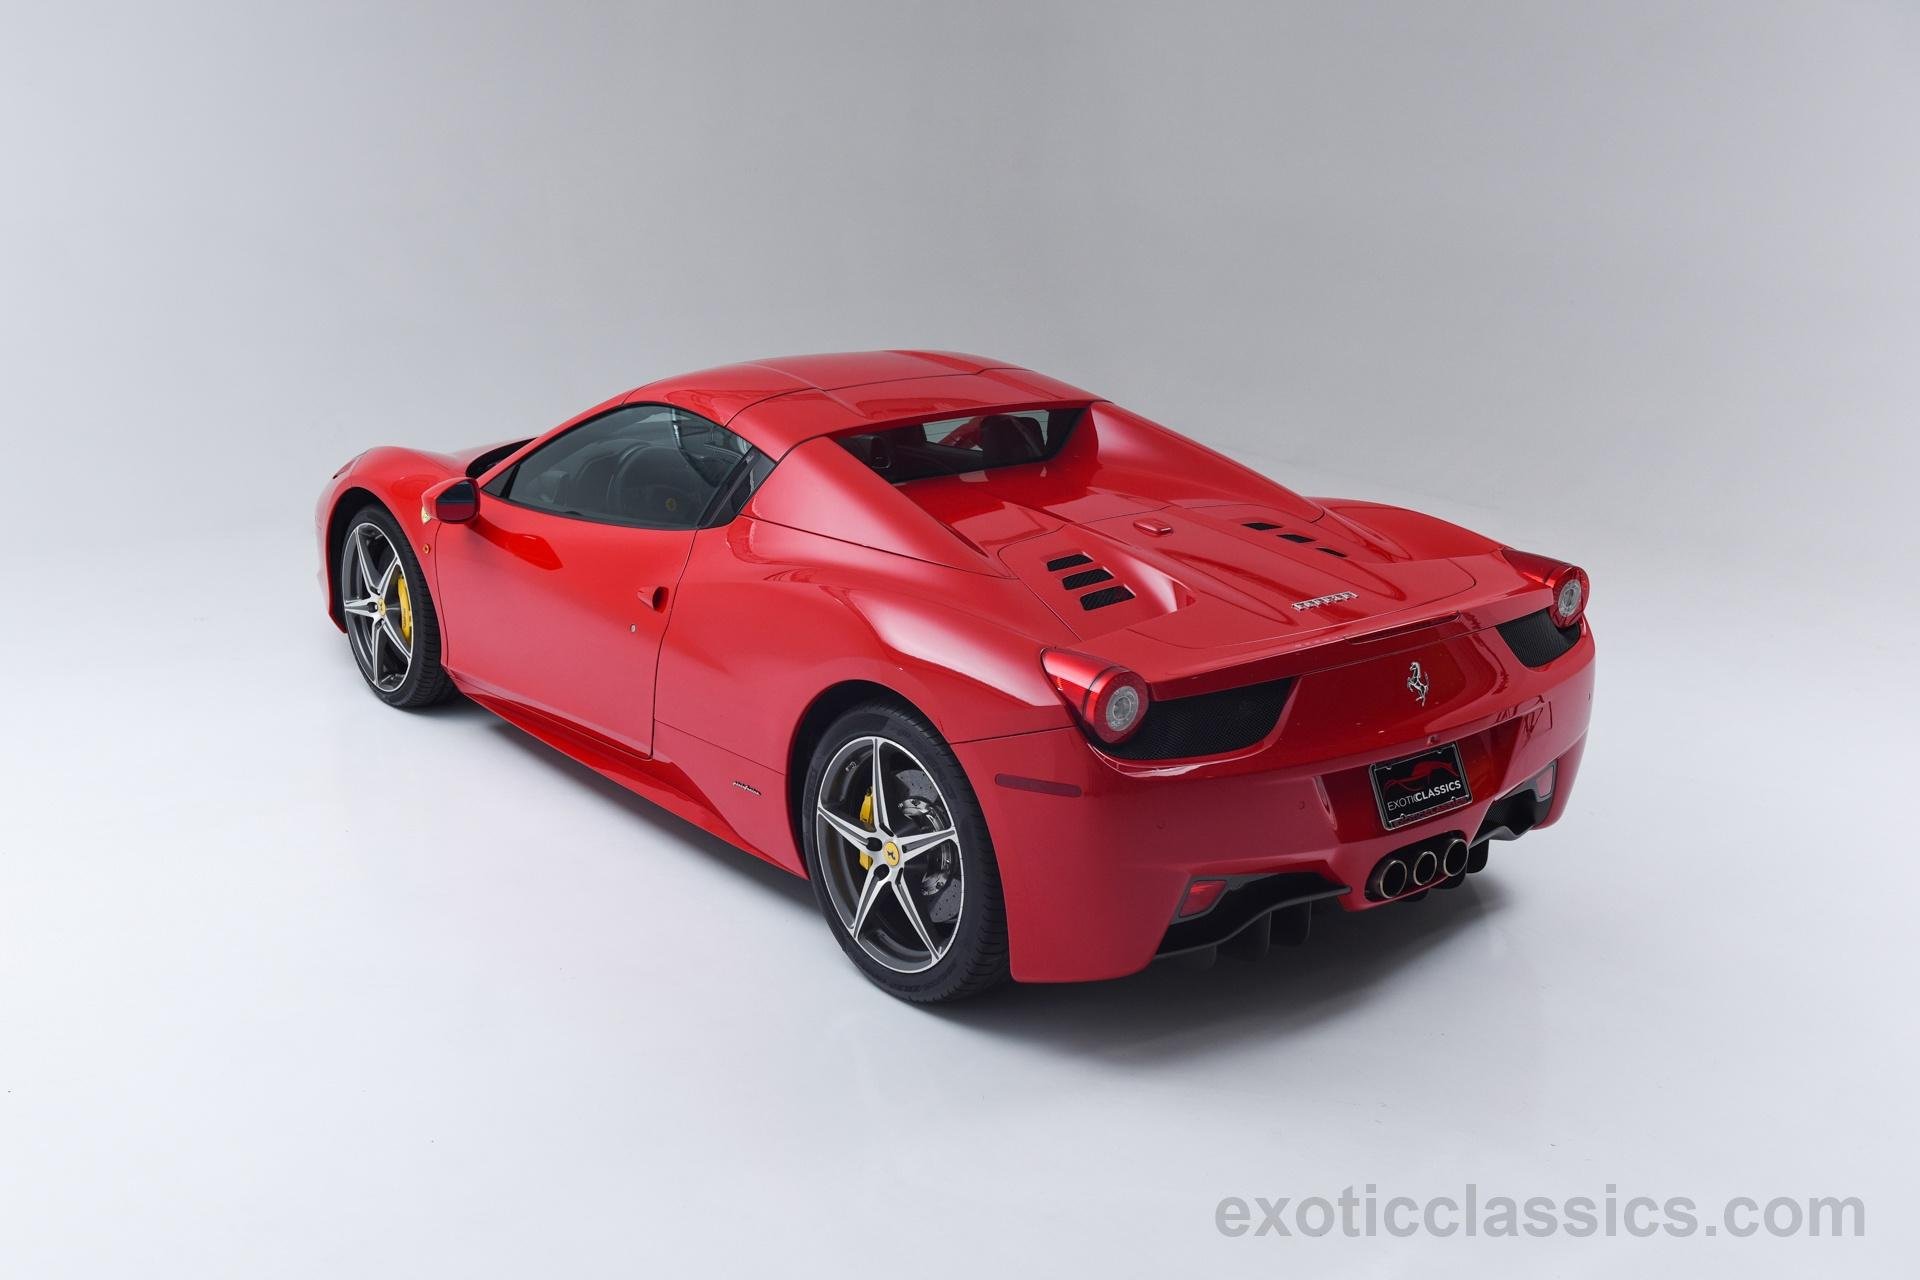 2014, Ferrari, 458, Spider, Rosso, Corsa, Red, Cars Wallpaper